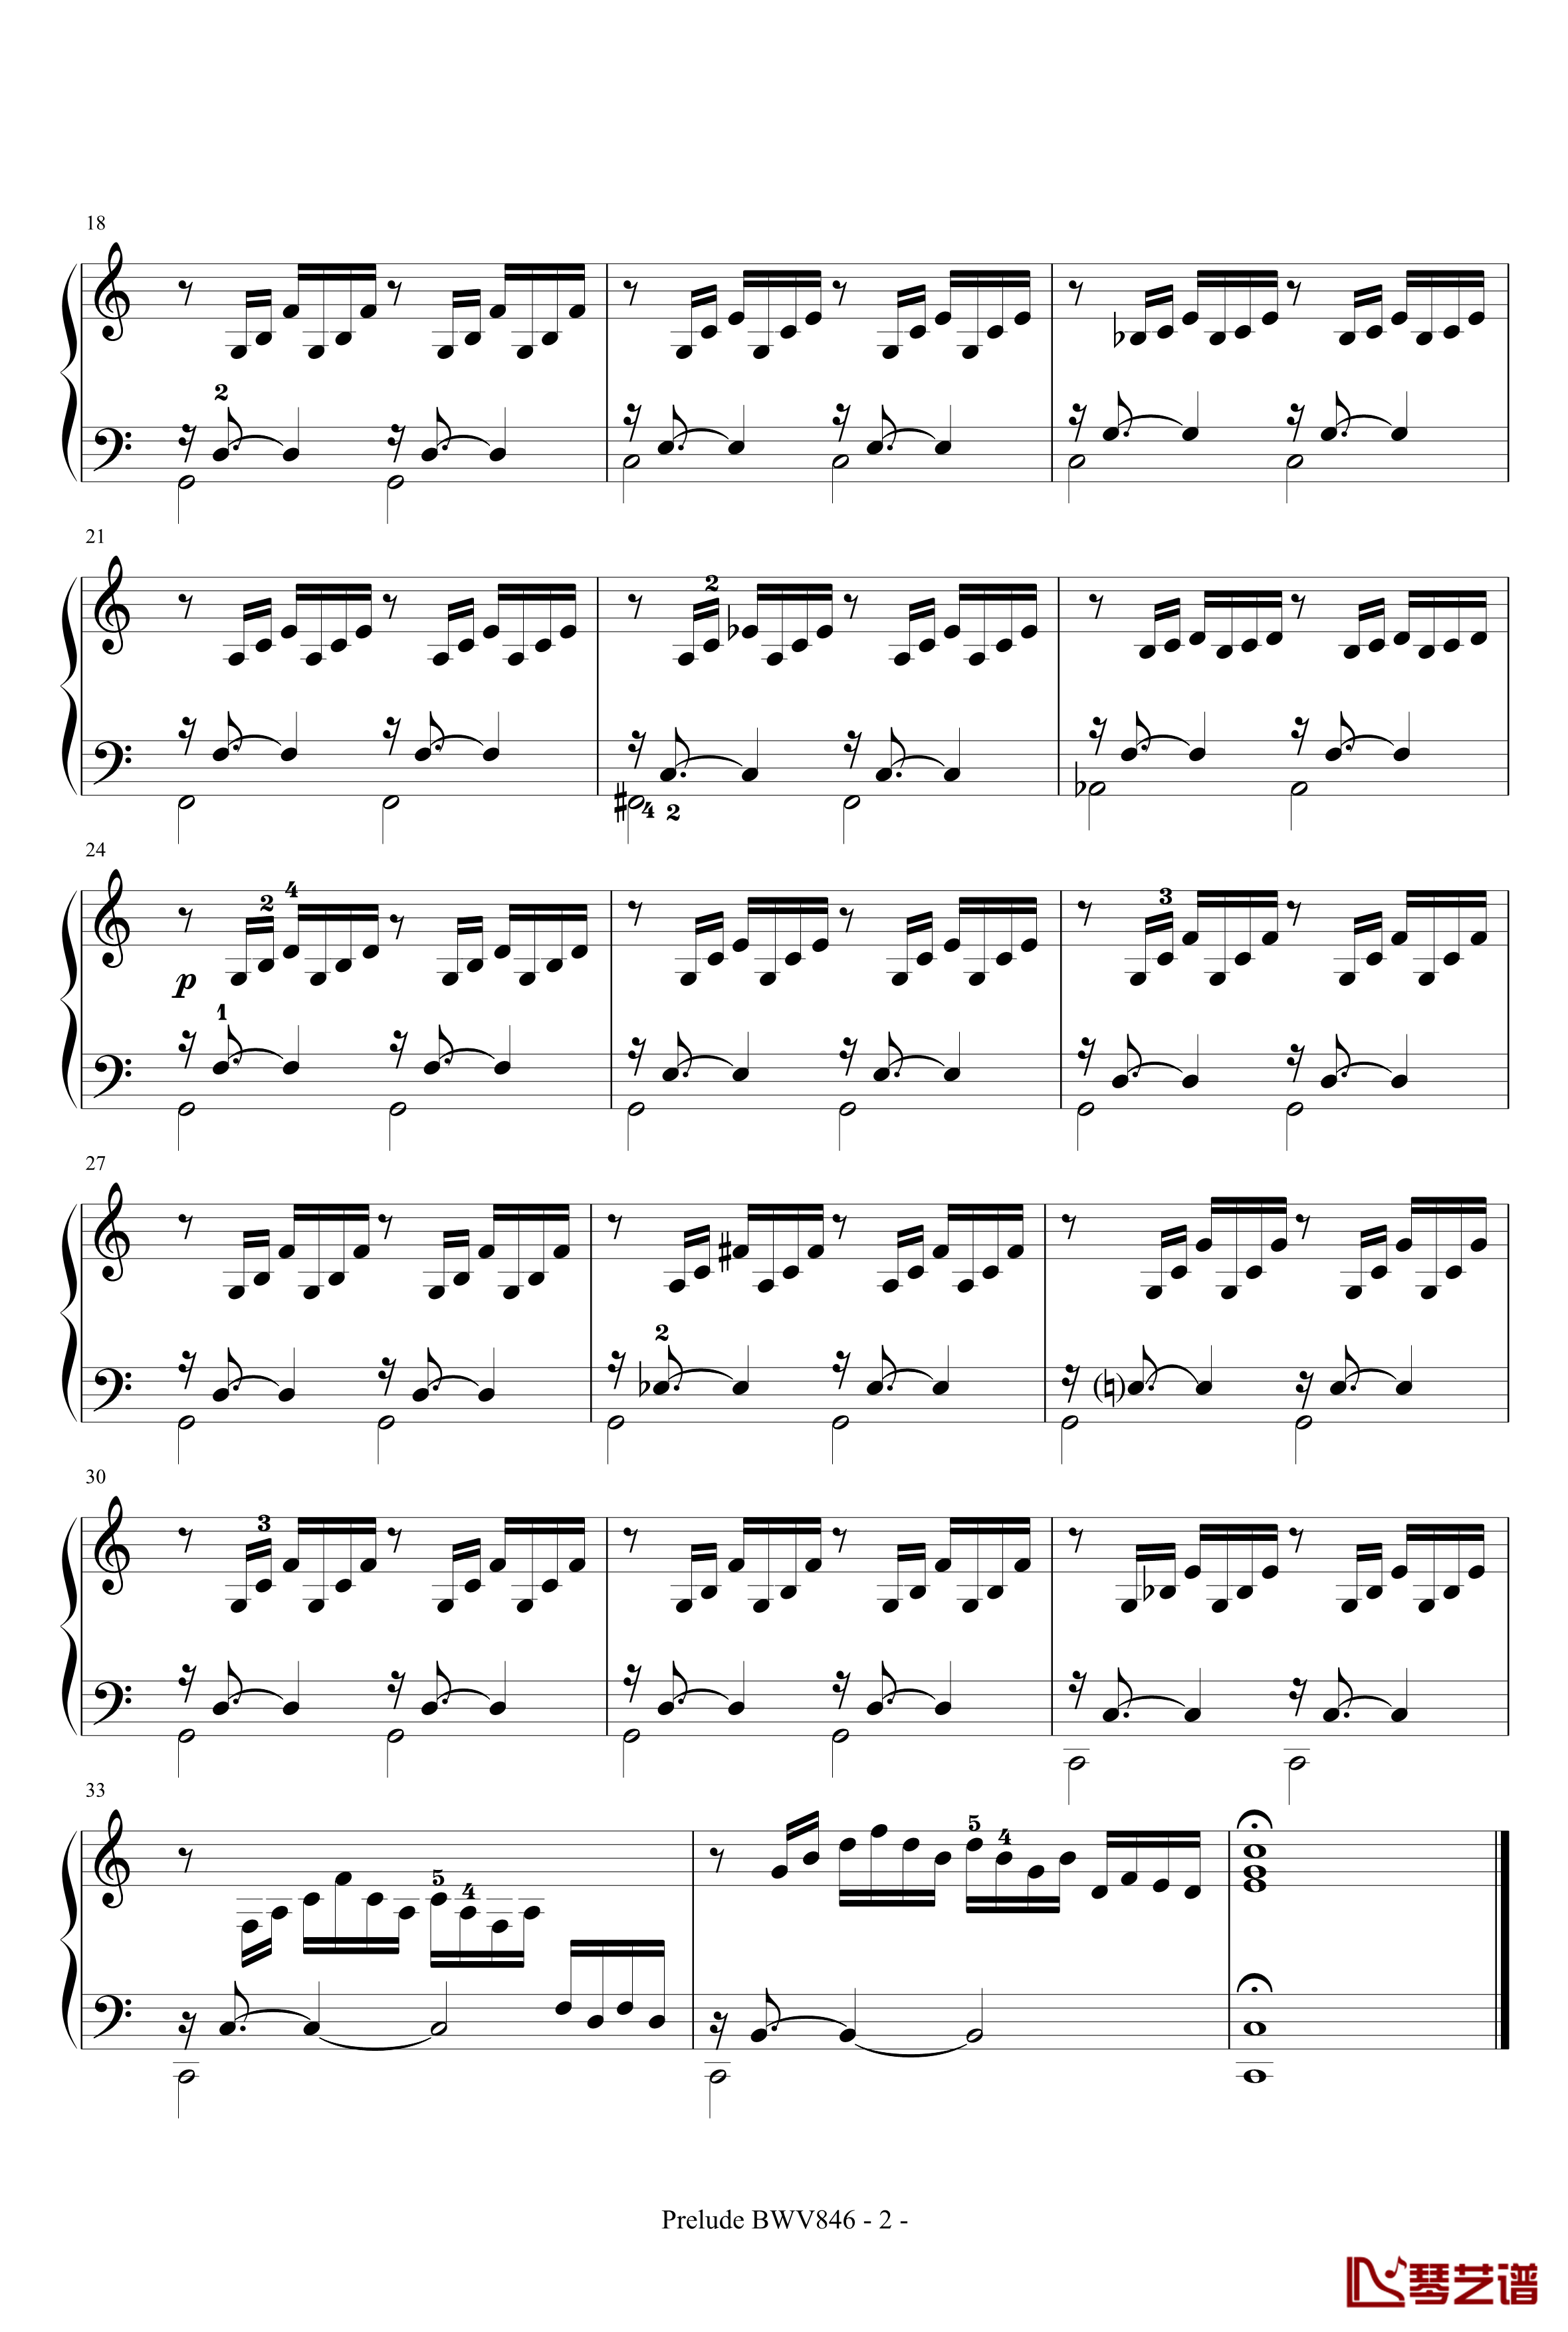 十二平均律一卷第一首 C大调前奏钢琴谱-巴哈-Bach, Johann Sebastian2